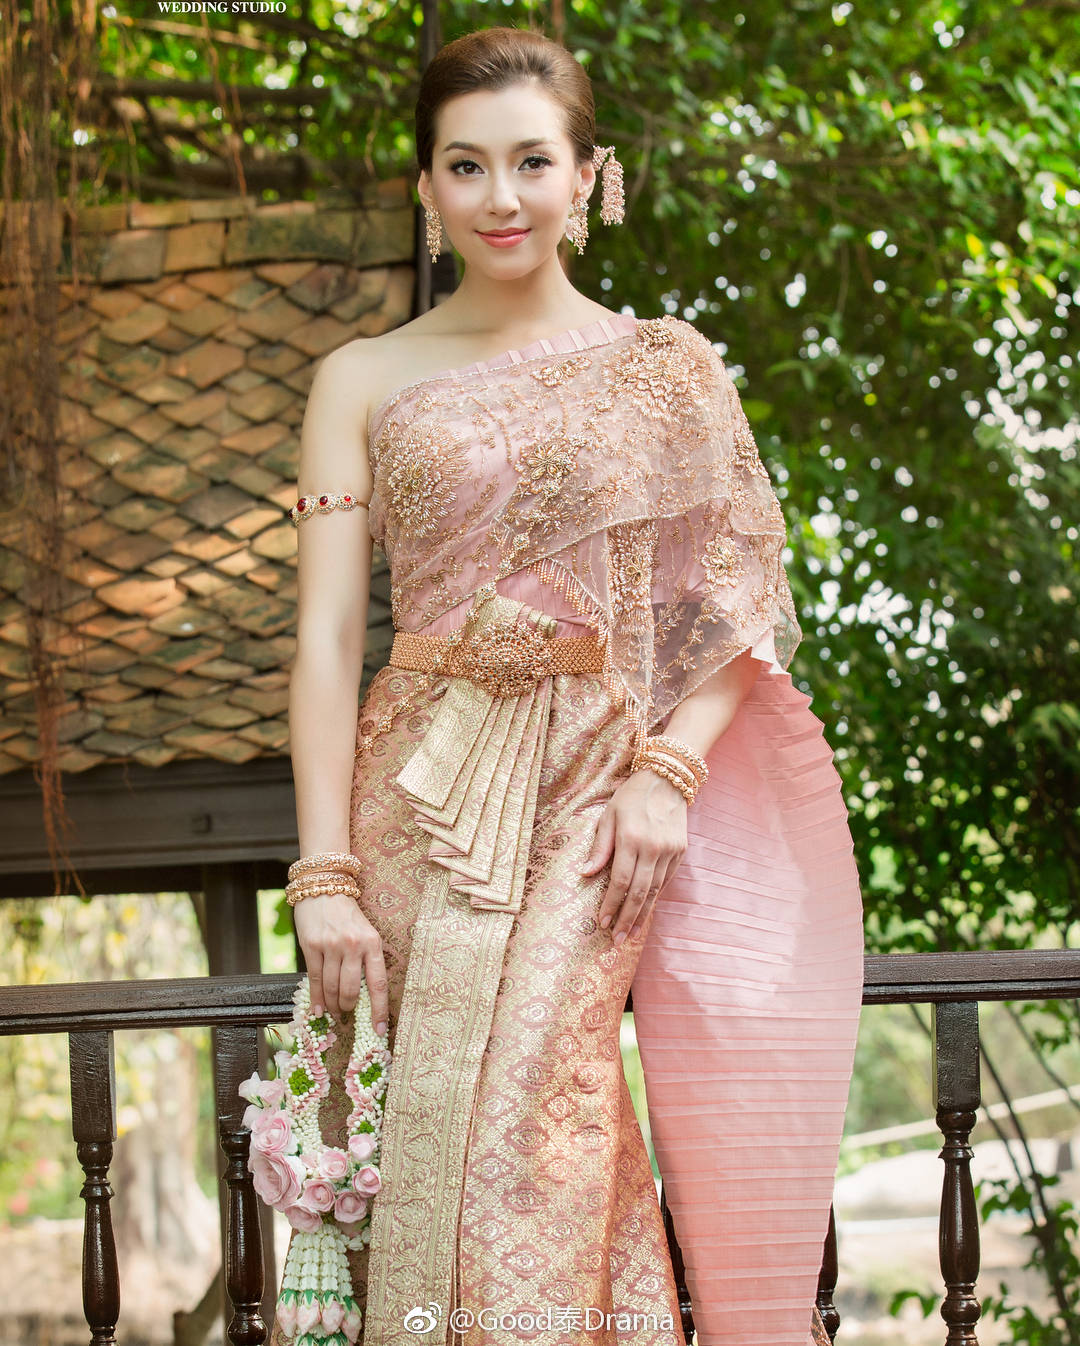 泰国传统服装的美丽的泰国女孩 库存照片. 图片 包括有 织品, 礼貌, 五颜六色, 聚会所, 舞蹈, 服装 - 72235826